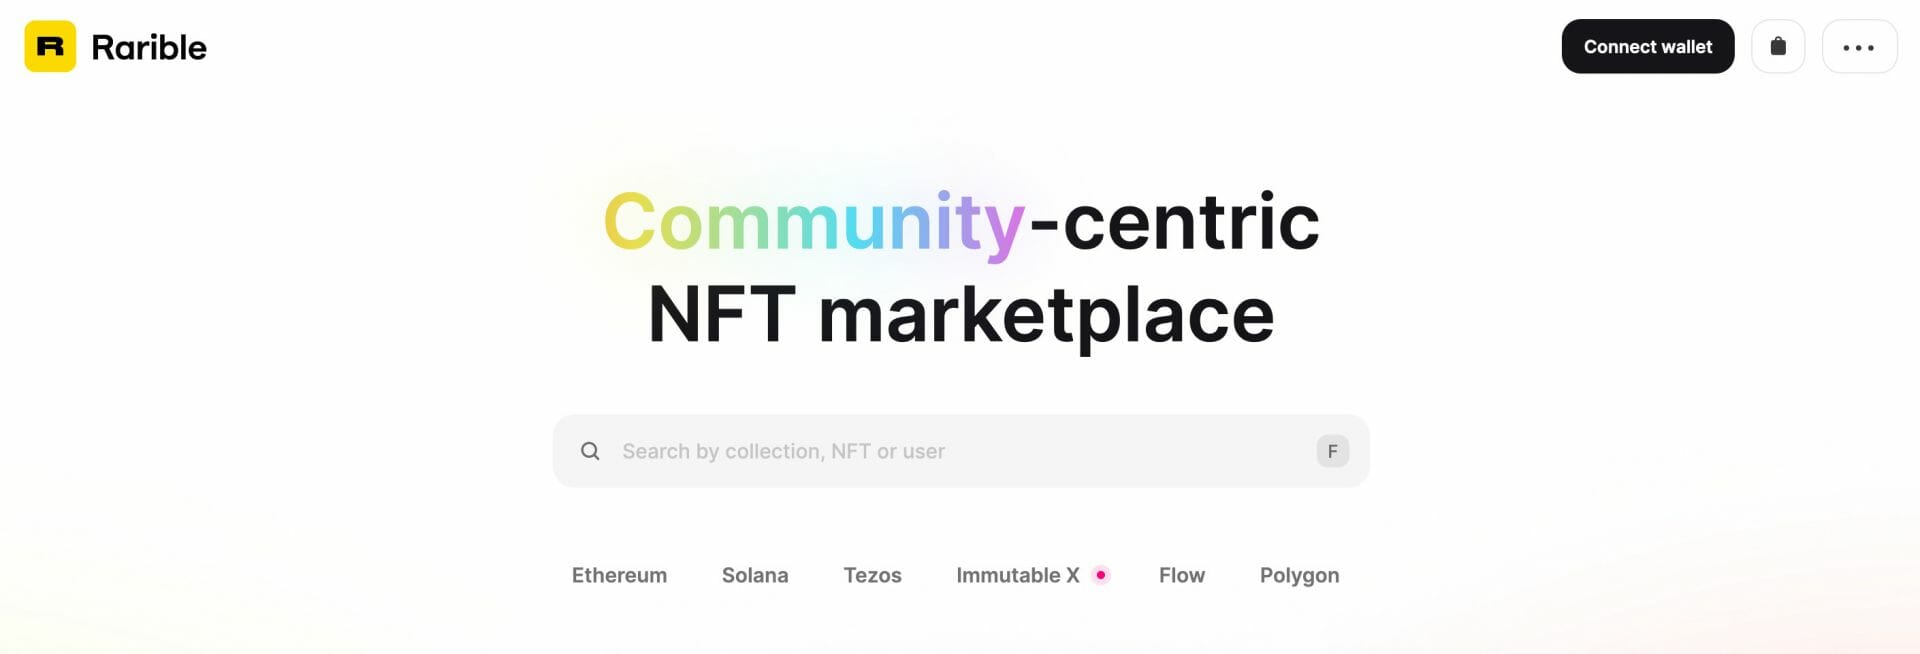 Avec Rarible, vous pouvez acheter des NFT sur les blockchains Ethereum, Solana, Polygon, Tezos, Immutable X et Flow.